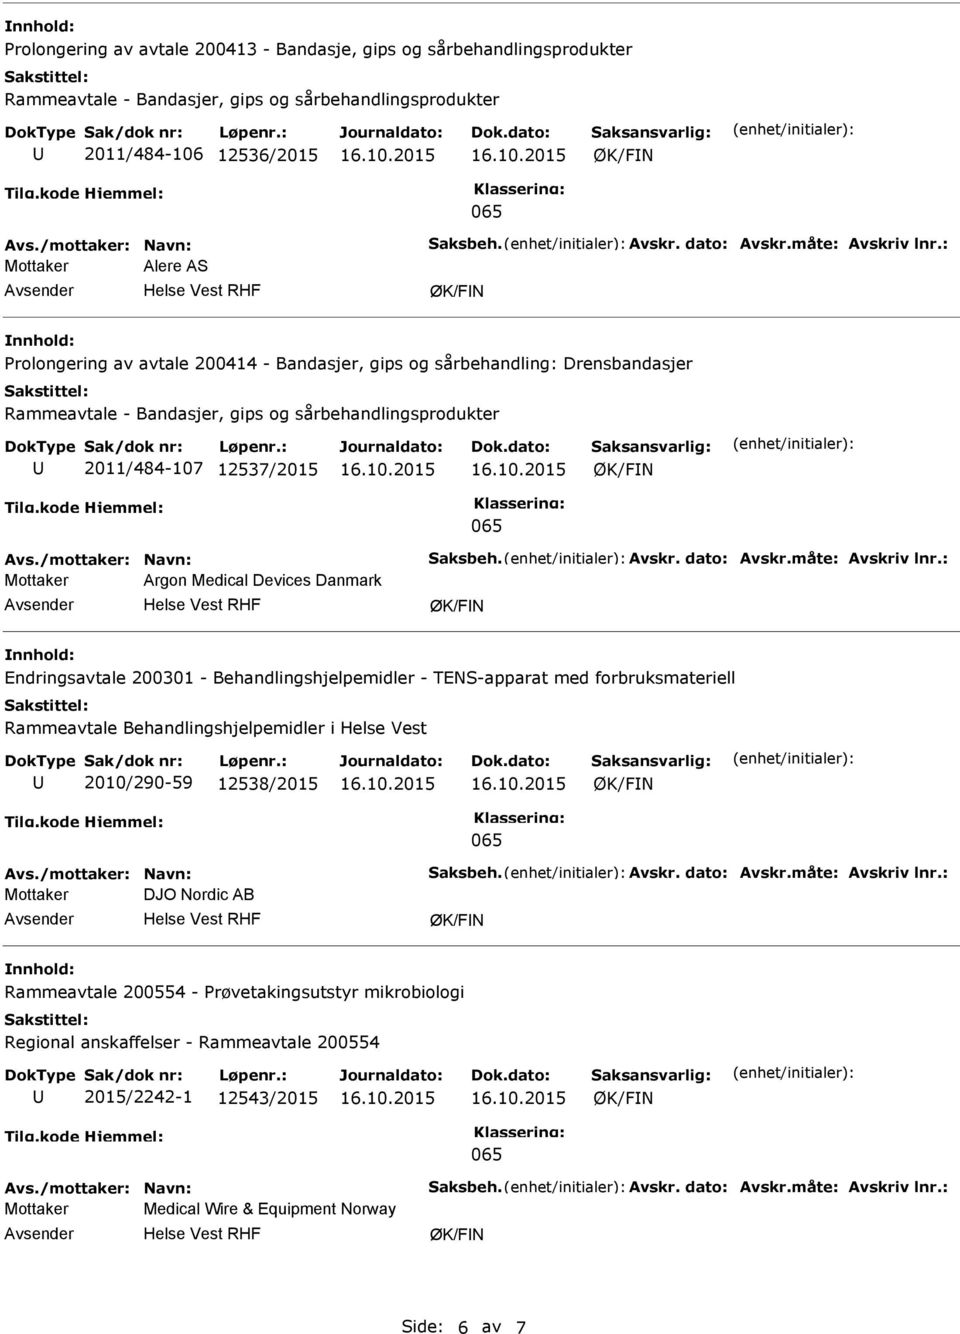 : Mottaker Argon Medical Devices Danmark Endringsavtale 200301 - Behandlingshjelpemidler - TENS-apparat med forbruksmateriell Rammeavtale Behandlingshjelpemidler i Helse Vest 2010/290-59 12538/2015